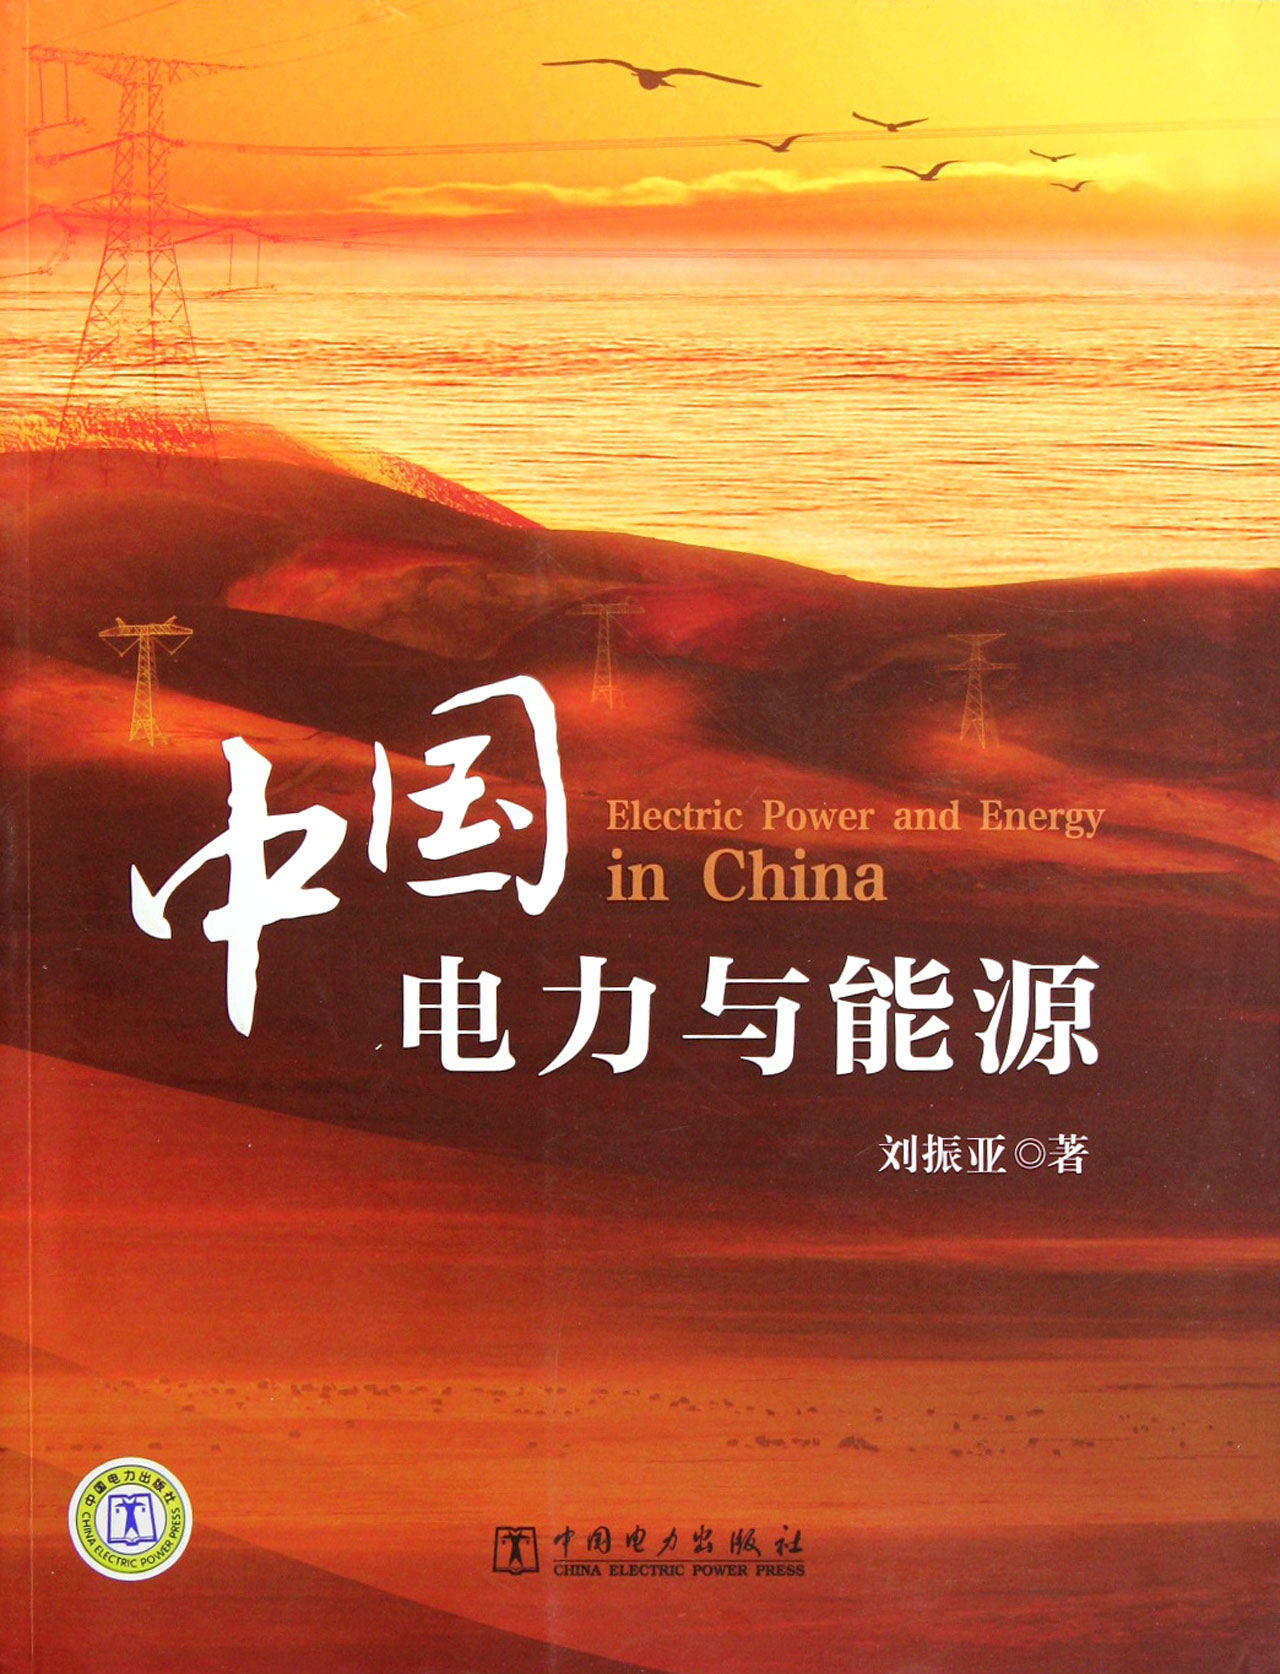 中国电力与能源 工业技术 刘振亚著 中国电力出版社 9787512326675 epub格式下载